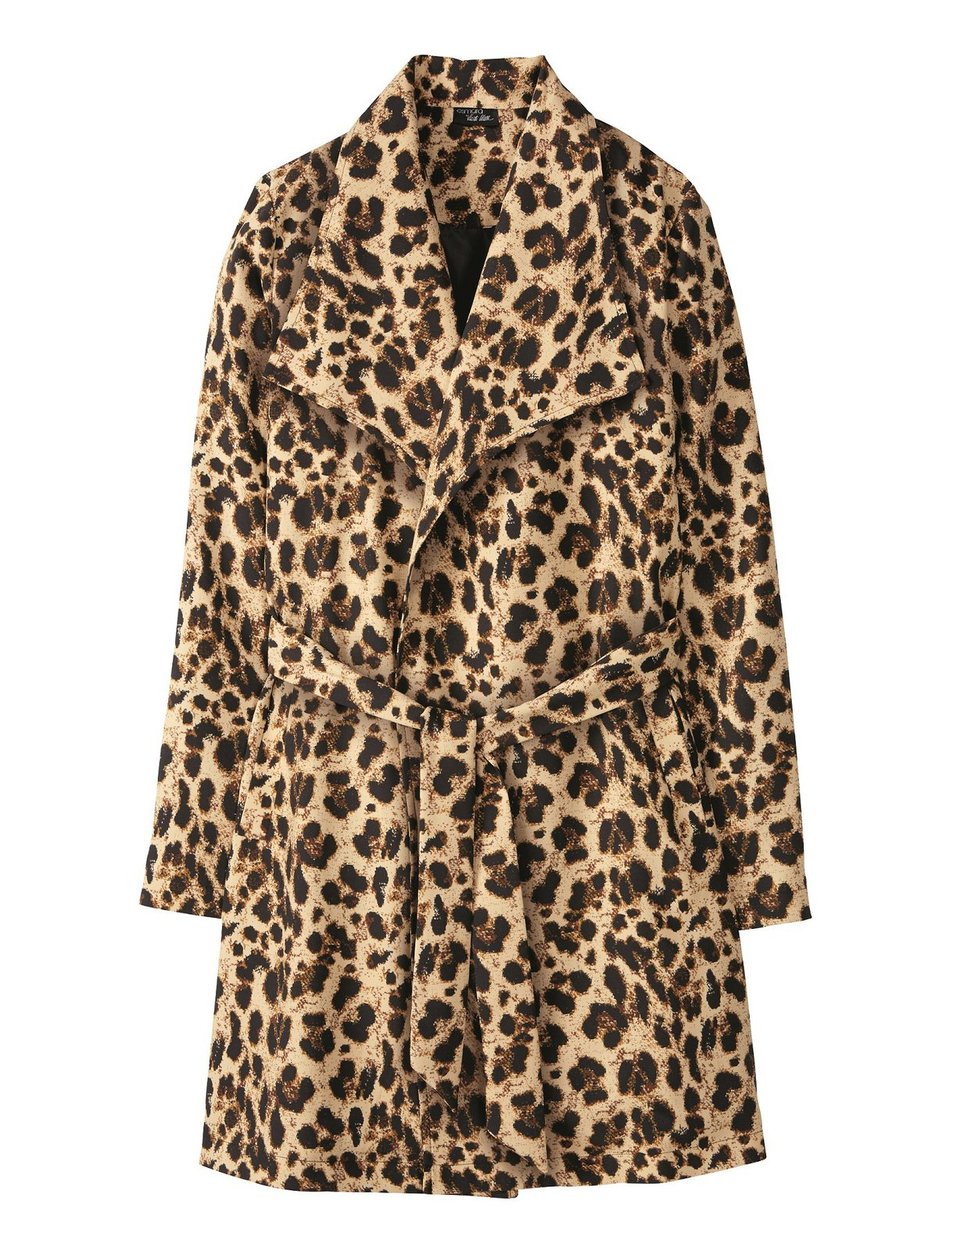 »Tygří« kabát, prodává Lidl, cena: 599